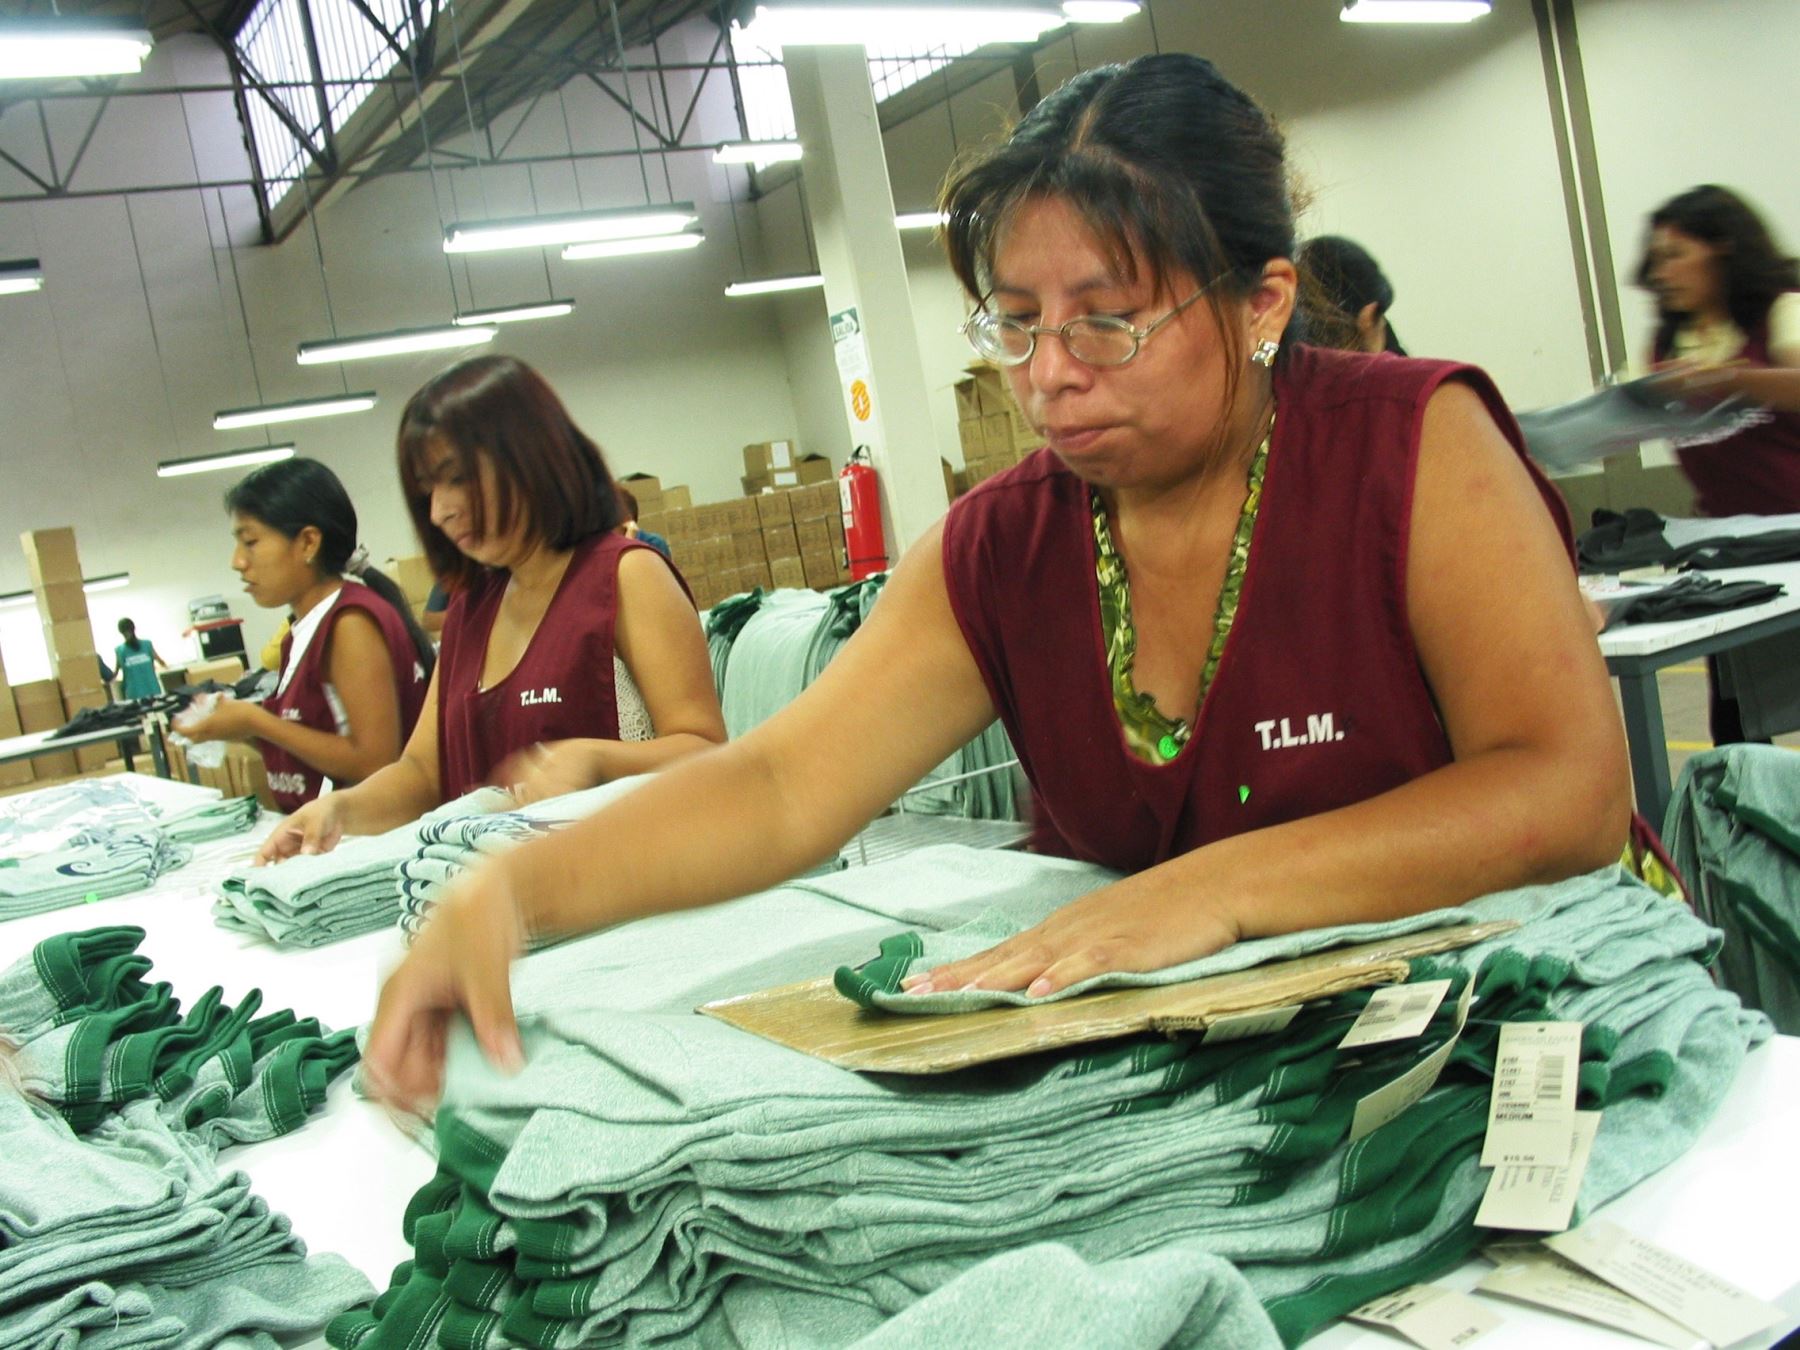 Estados Unidos es el principal mercado de las prendas de vestir peruanas en los últimos años, favorecidas principalmente por el Tratado de Libre Comercio (TLC) bilateral. Cortesía Adex